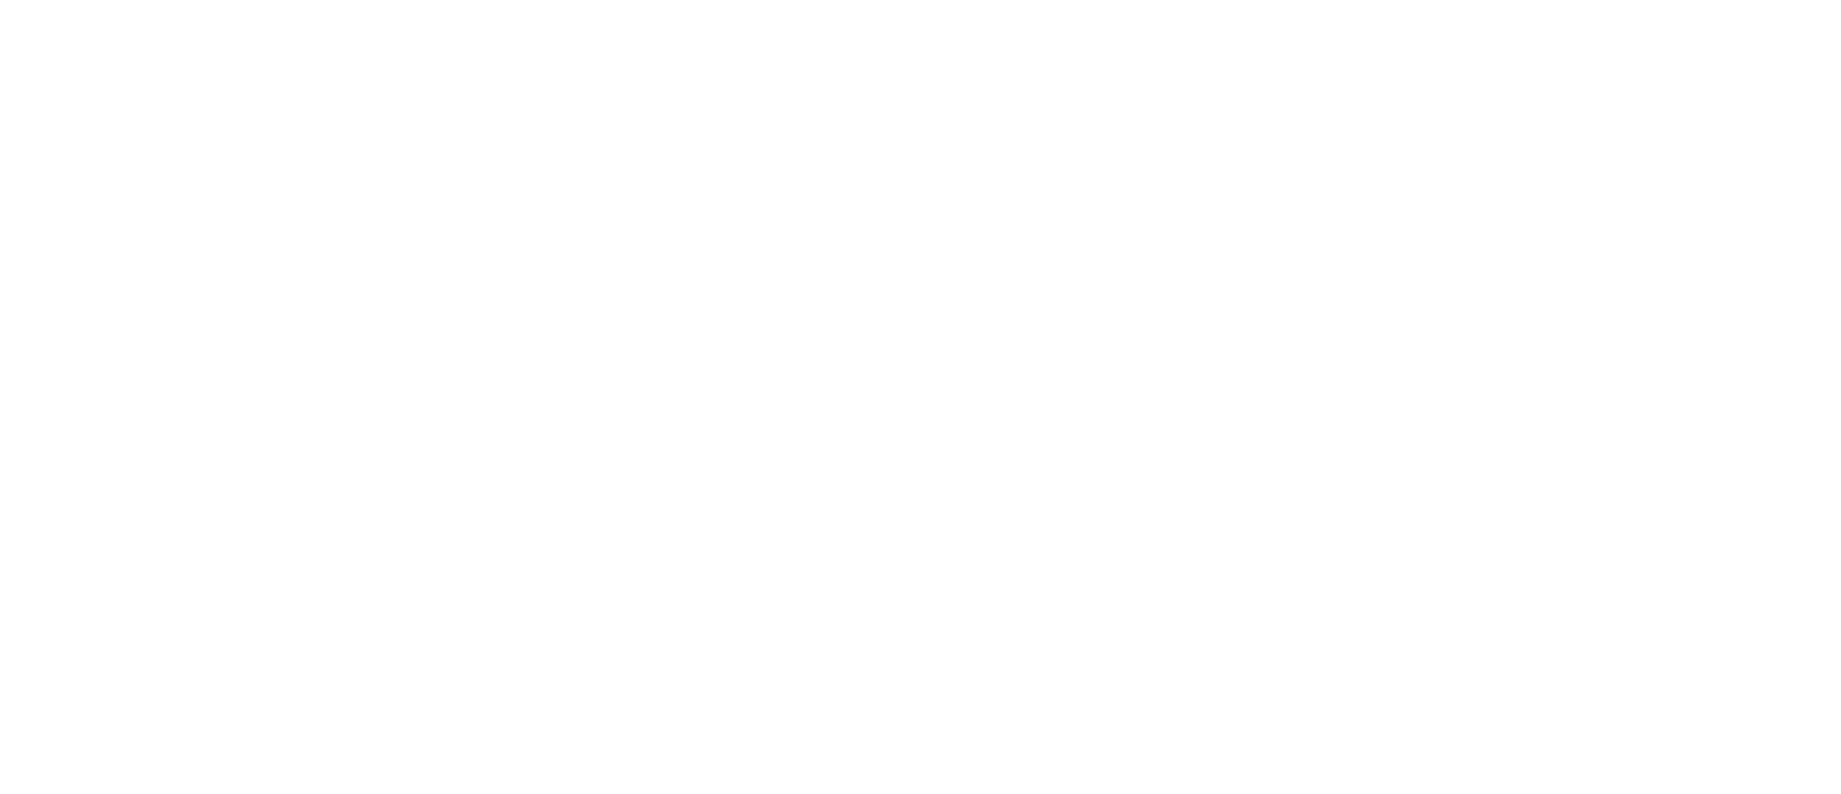 Gisborne Manors Logo